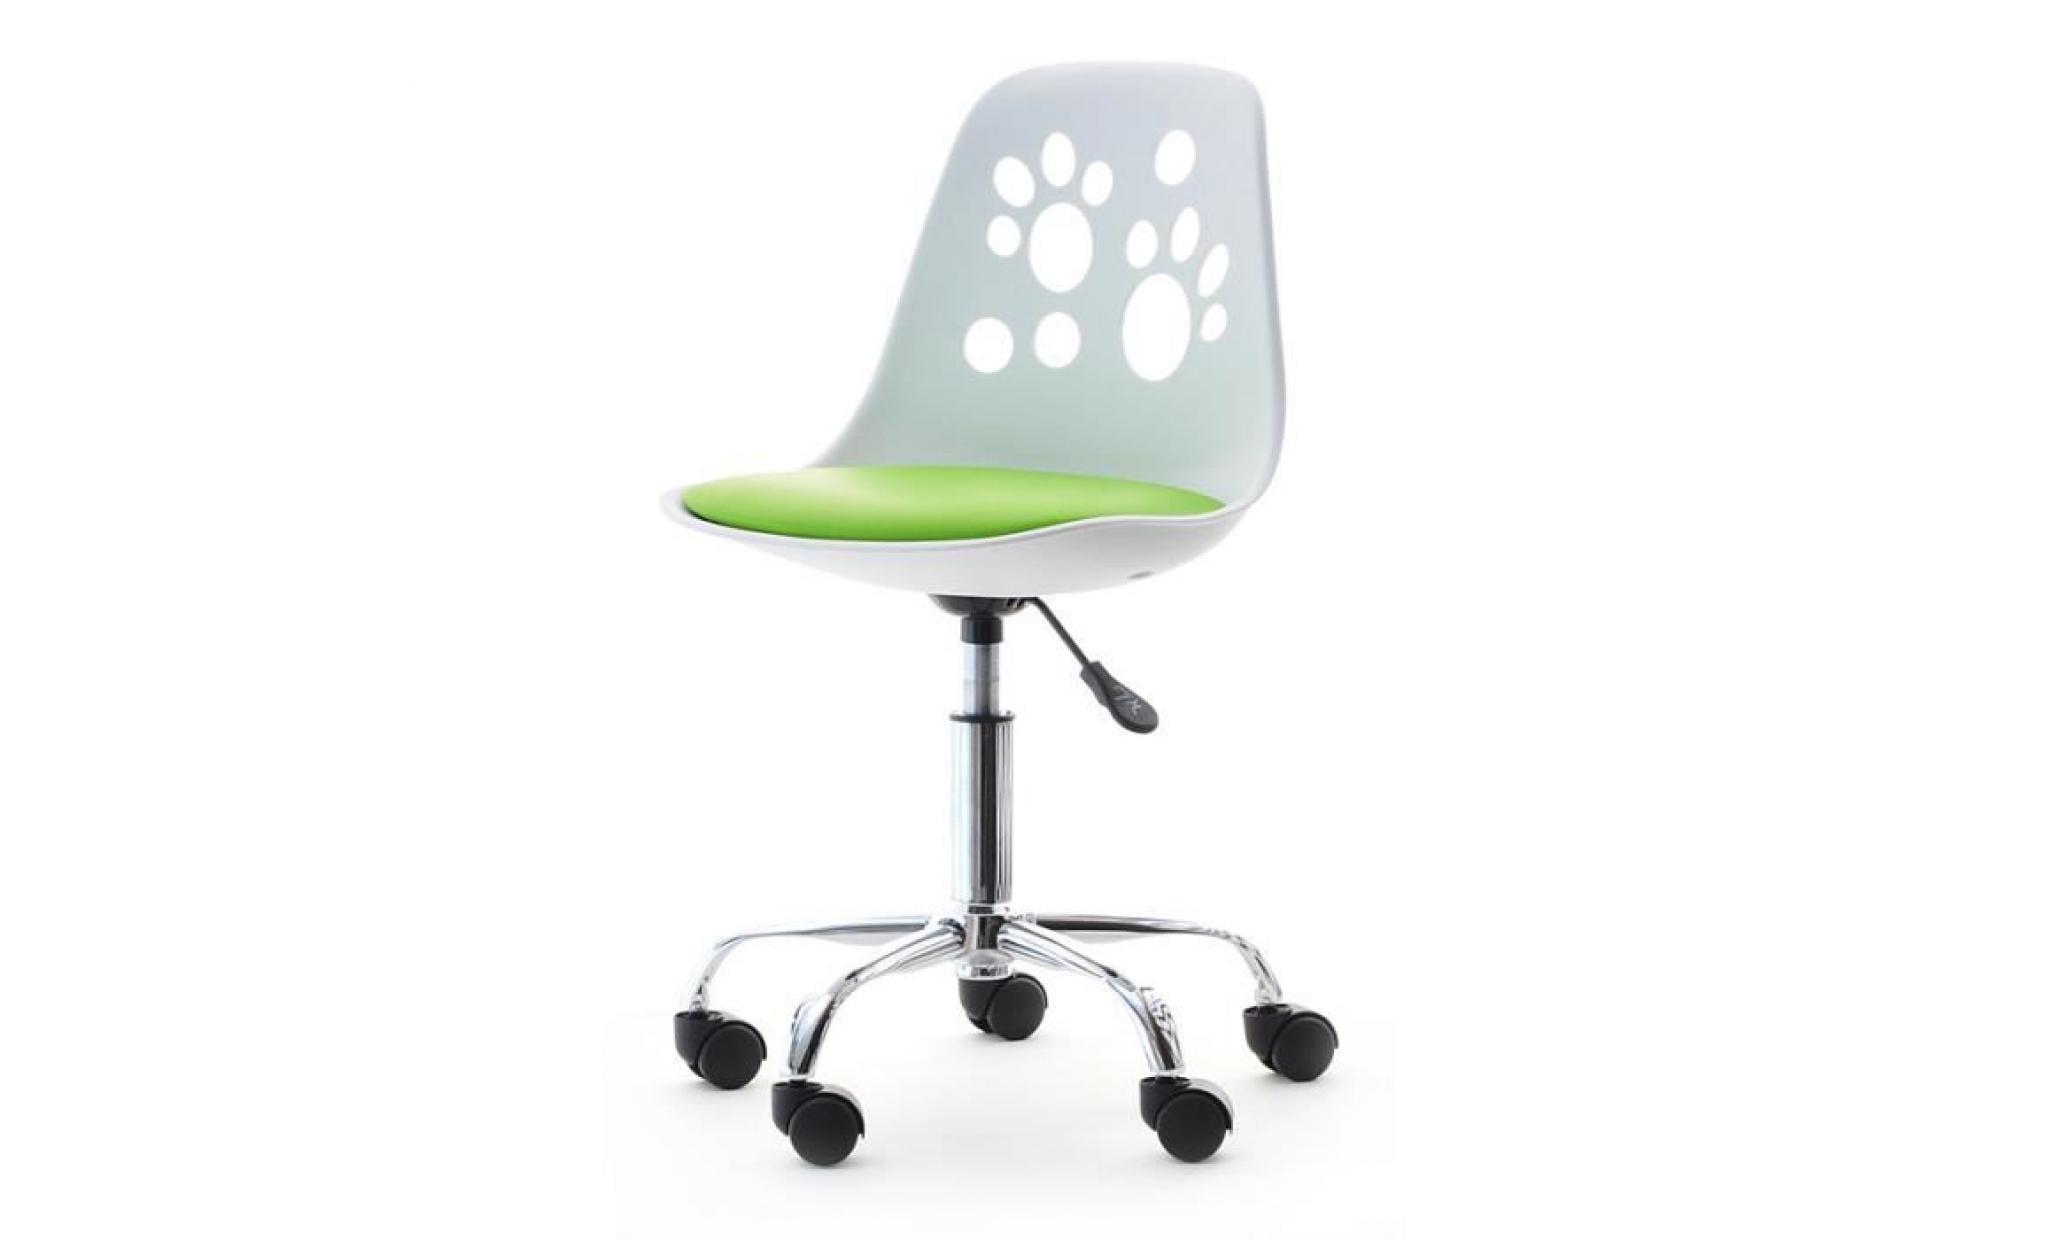 fauteuil d'enfant / chaise de bureau   foot   40 cm   blanc / pêche   design moderne   réglable   pivotant pas cher